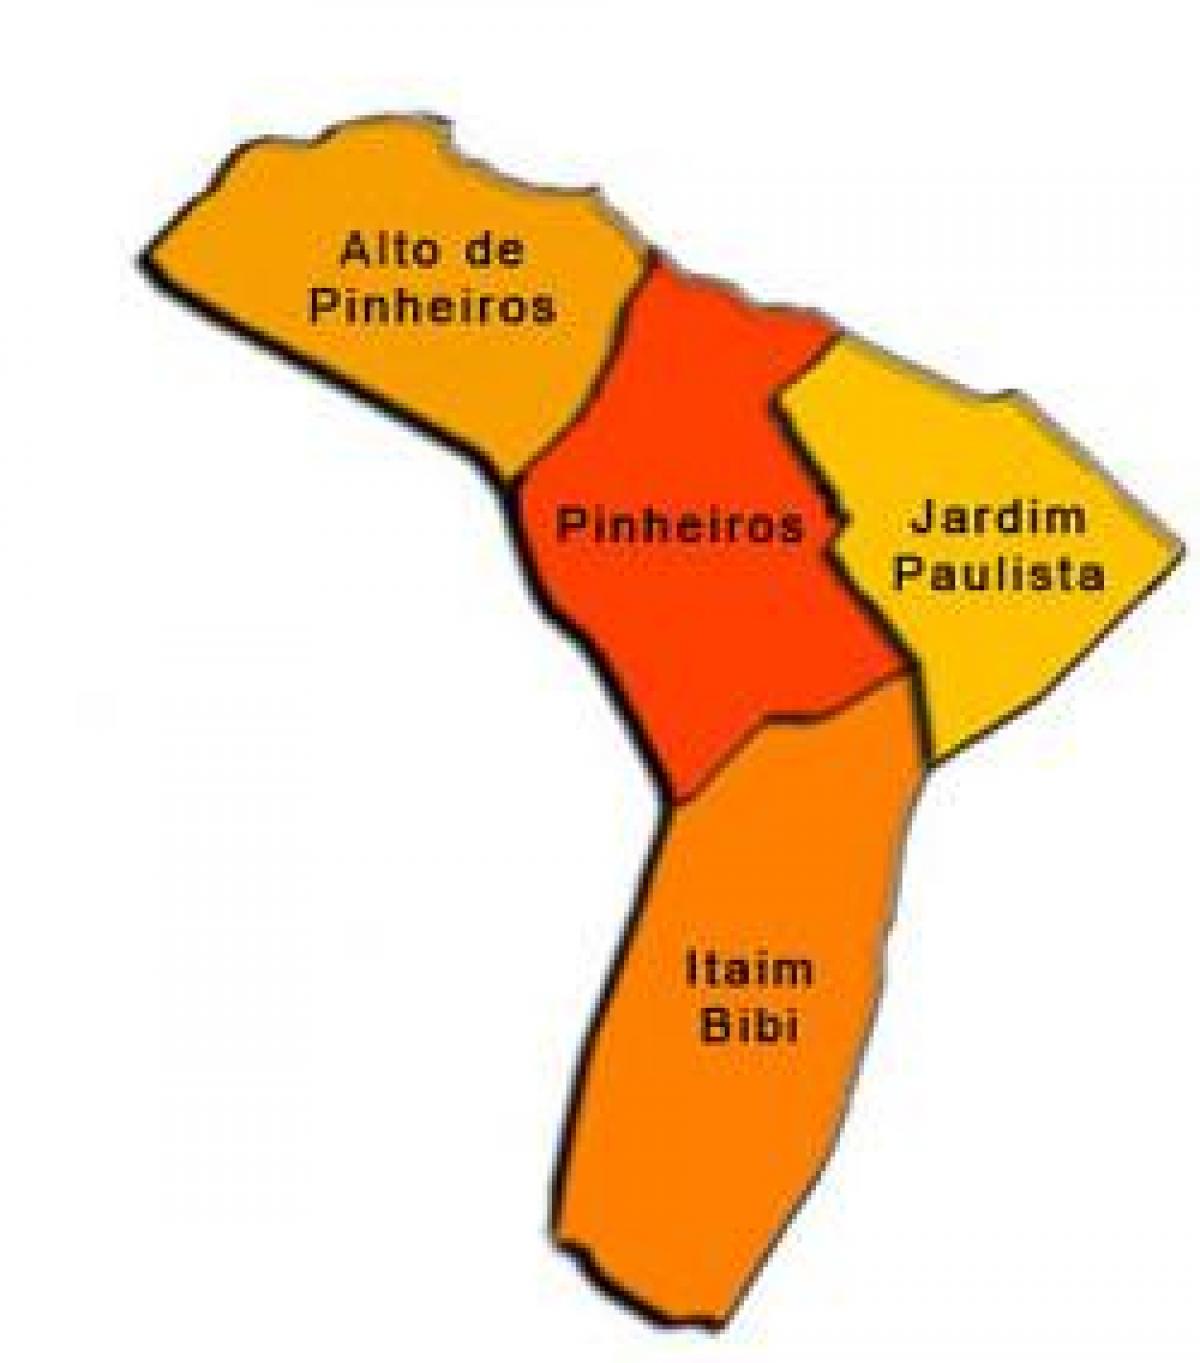 Kaart van Pinheiros sub-prefektuur